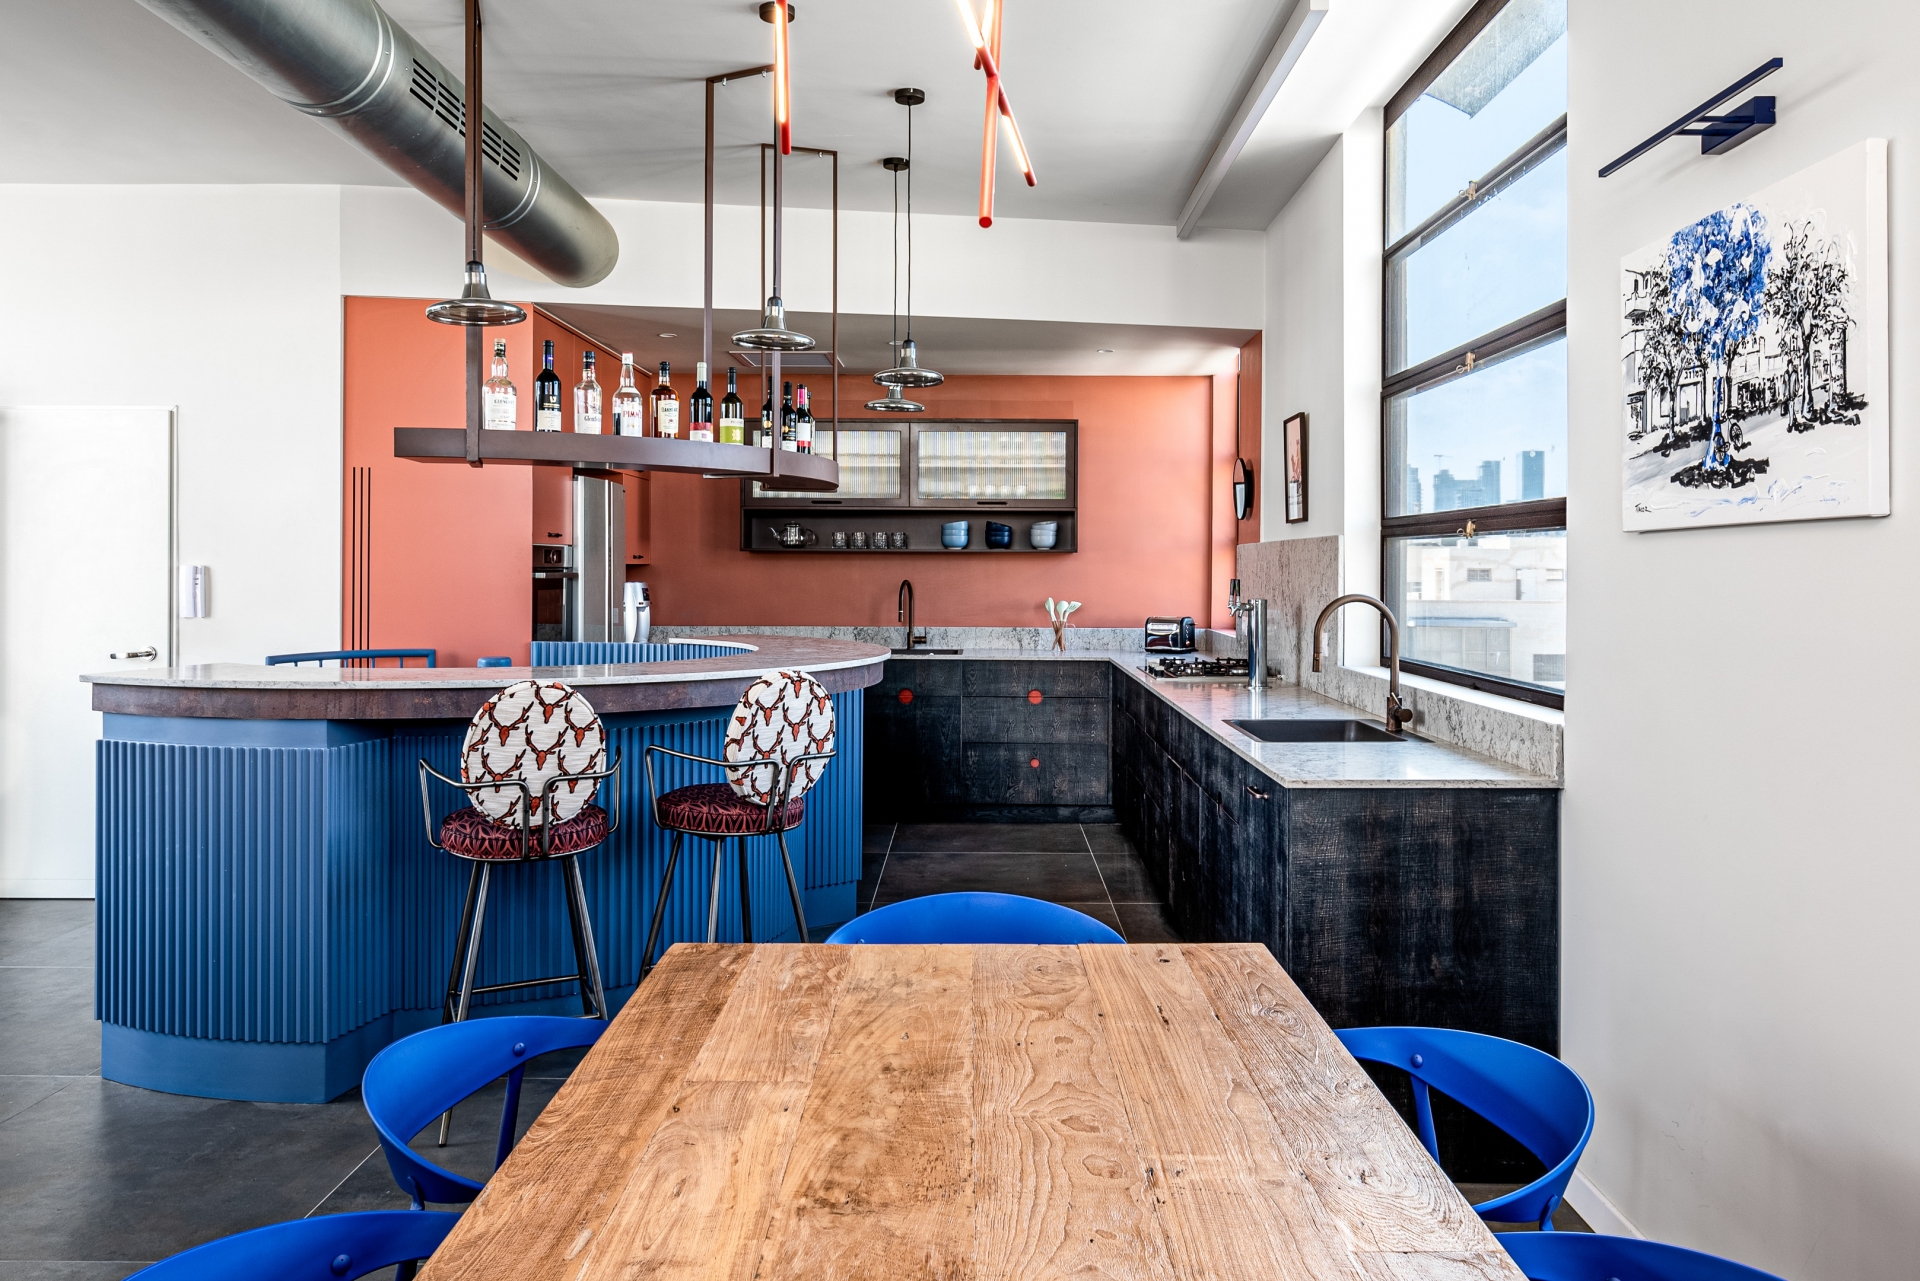 Khu vực nấu nướng cực kỳ ấn tượng với bảng màu cam gạch ấm áp, xám đen sang chảnh, thêm cả phần quầy bar mở rộng với đường cong mềm mại cùng tone màu xanh lam kết nối với nội thất tầng 1 cho cái nhìn hài hòa.